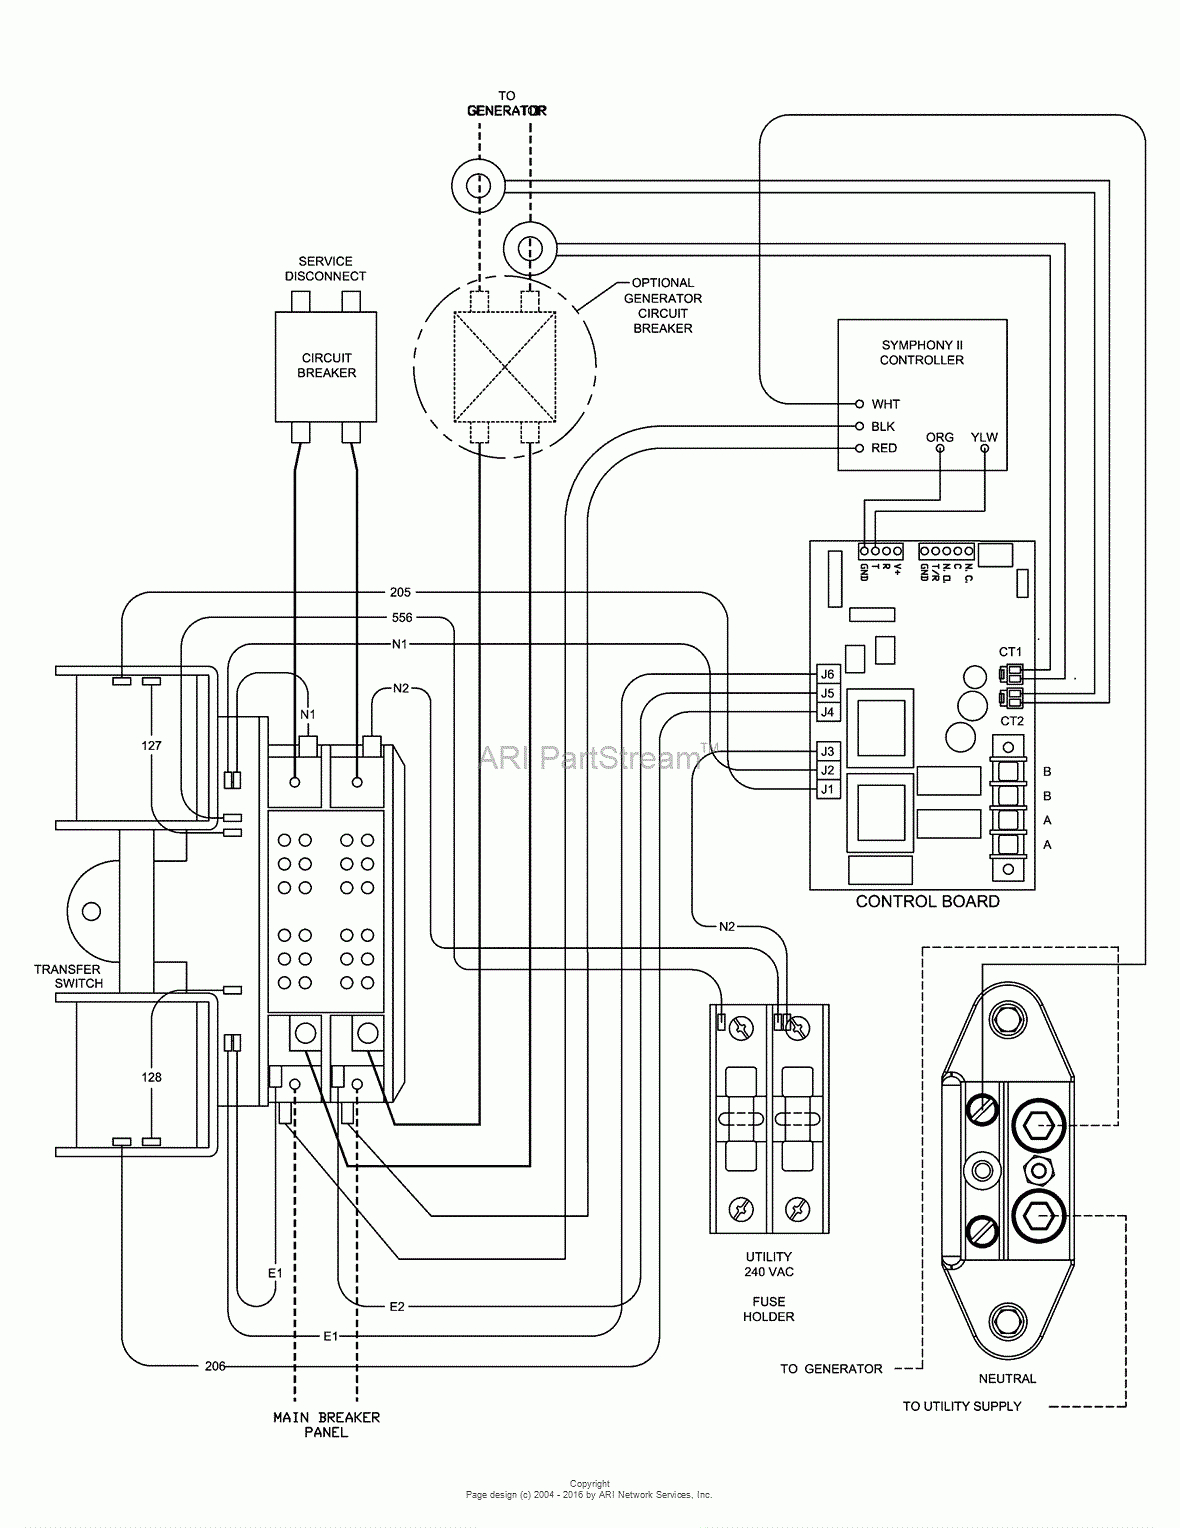 Wiring Diagram Mounting Generator Transfer Switch Generac Ats - Generac Transfer Switch Wiring Diagram